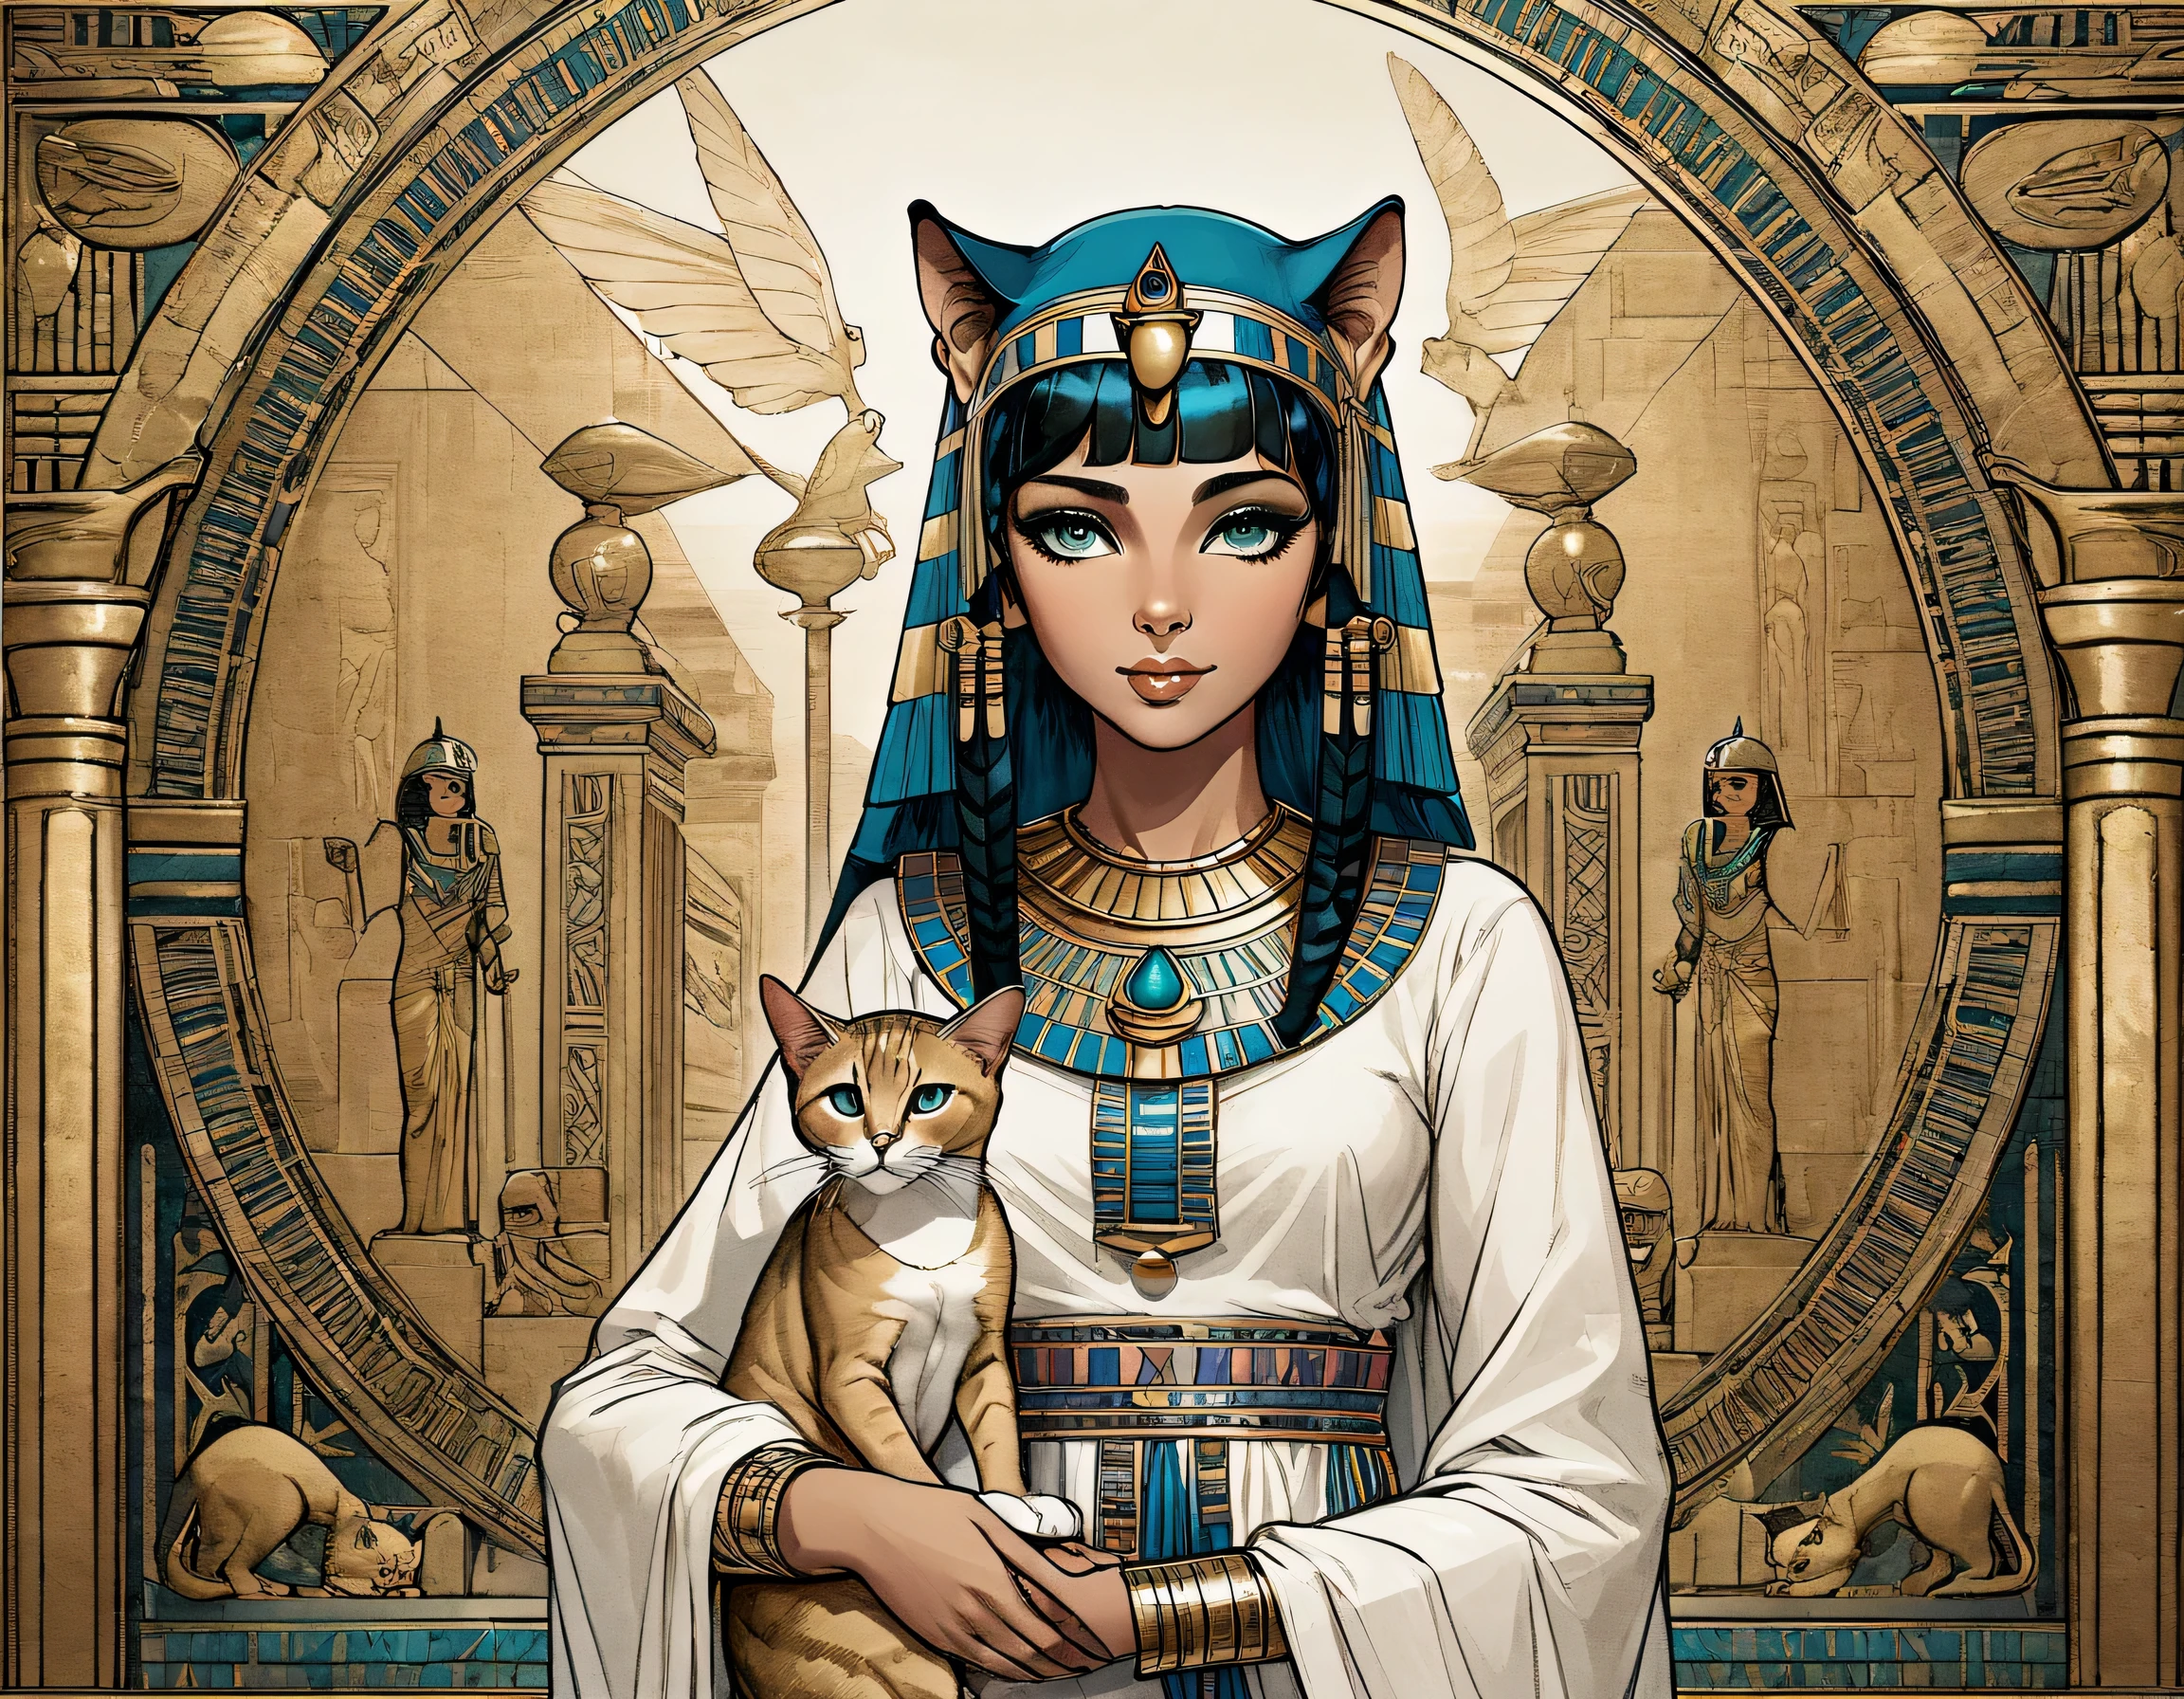 Ilustração de Cleópatra quando menina e um gato egípcio, abissínio, gato intrincado e detalhado, nos braços de Cleópatra, gracioso, elegante, ornamentado, esfinge em segundo plano